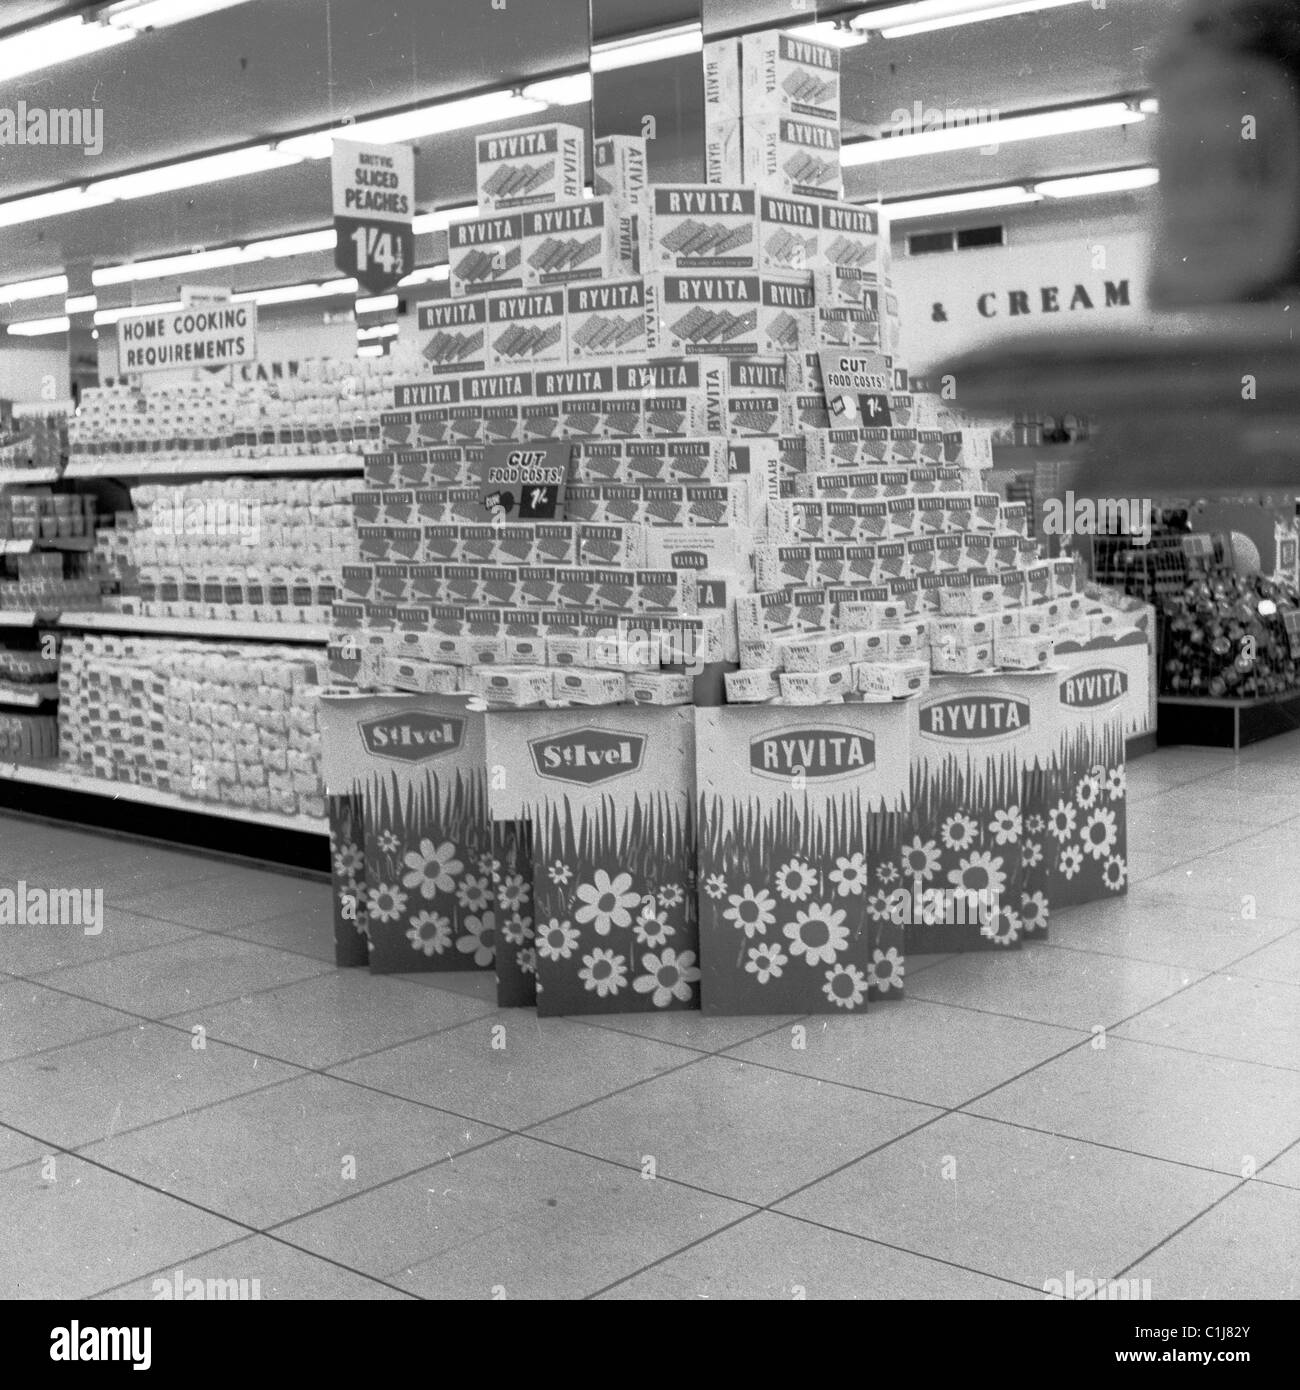 Circa 1960s, all'interno di un nuovo negozio self-service, un supermercato fine fare, con un'ampia esposizione promozionale di prodotti Ryvita, Inghilterra, Regno Unito. Foto Stock